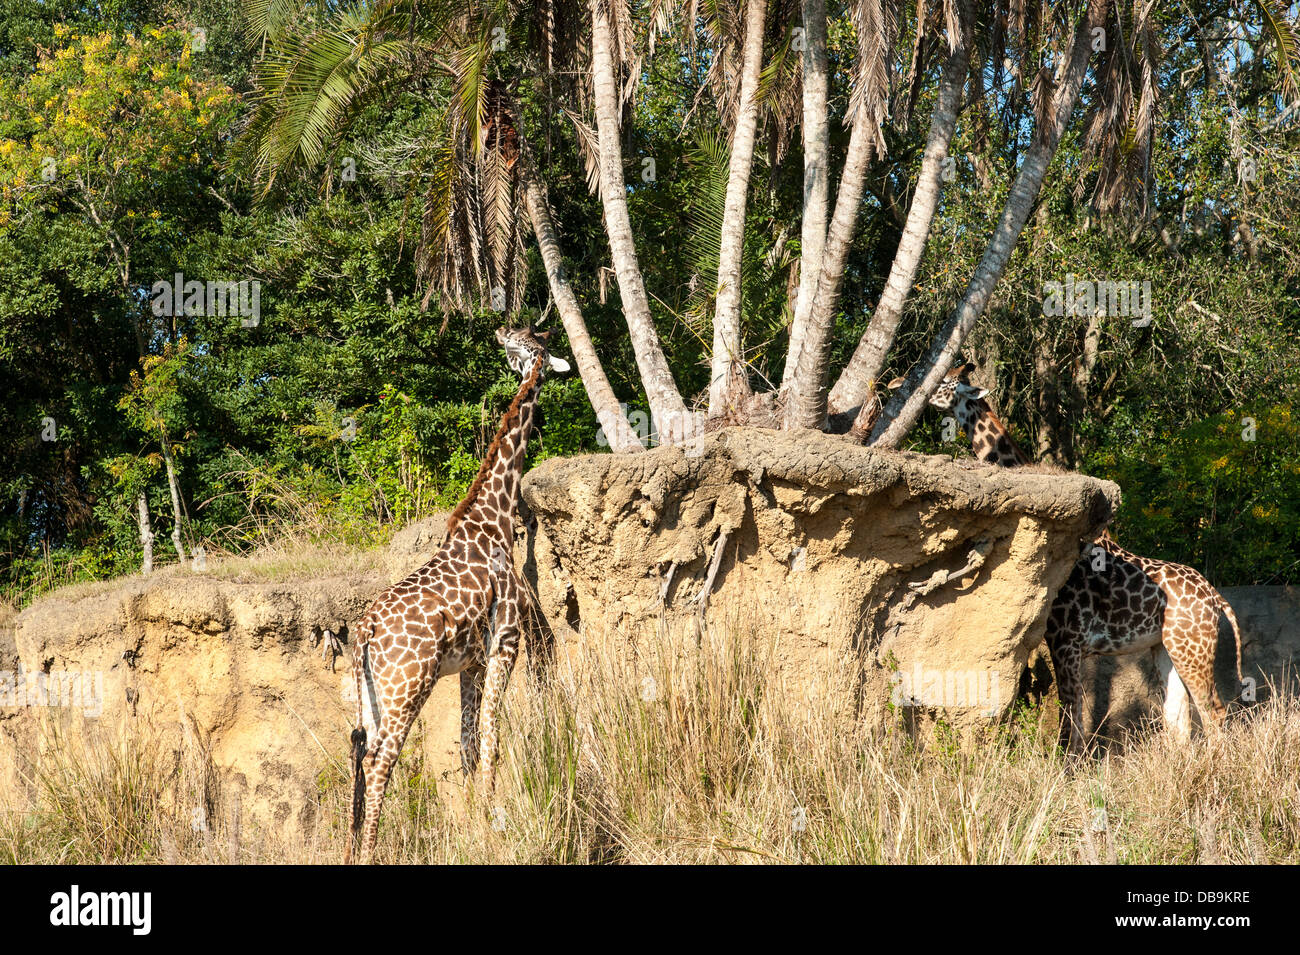 La giraffa a mangiare il Regno degli Animali di Disney presso il Walt Disney World Resort di Orlando, Florida, Foto Stock